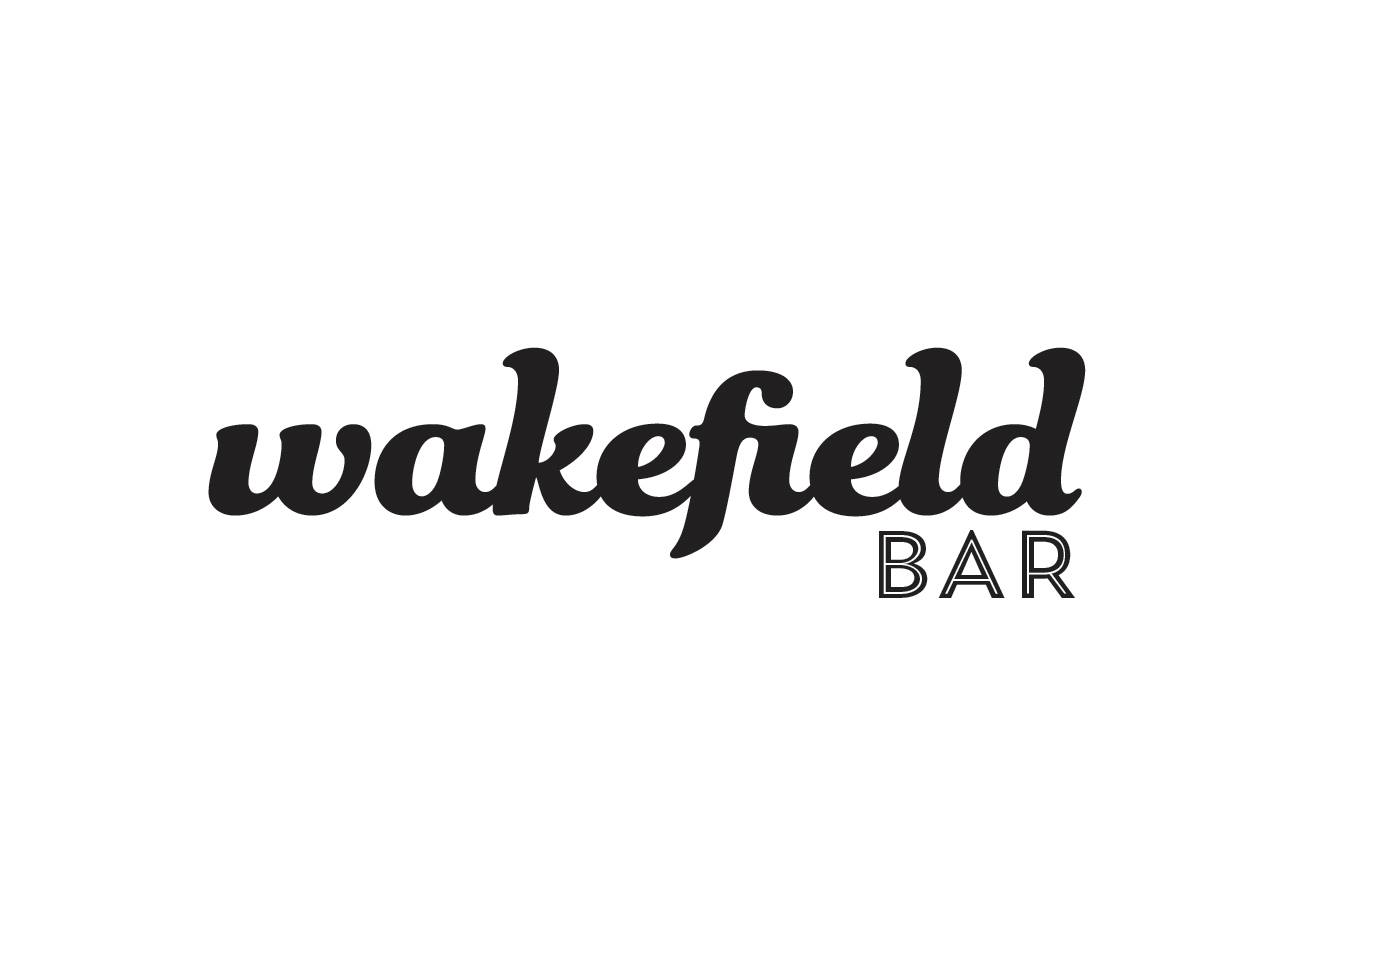 Business logo of Wakefield Bar Belltown